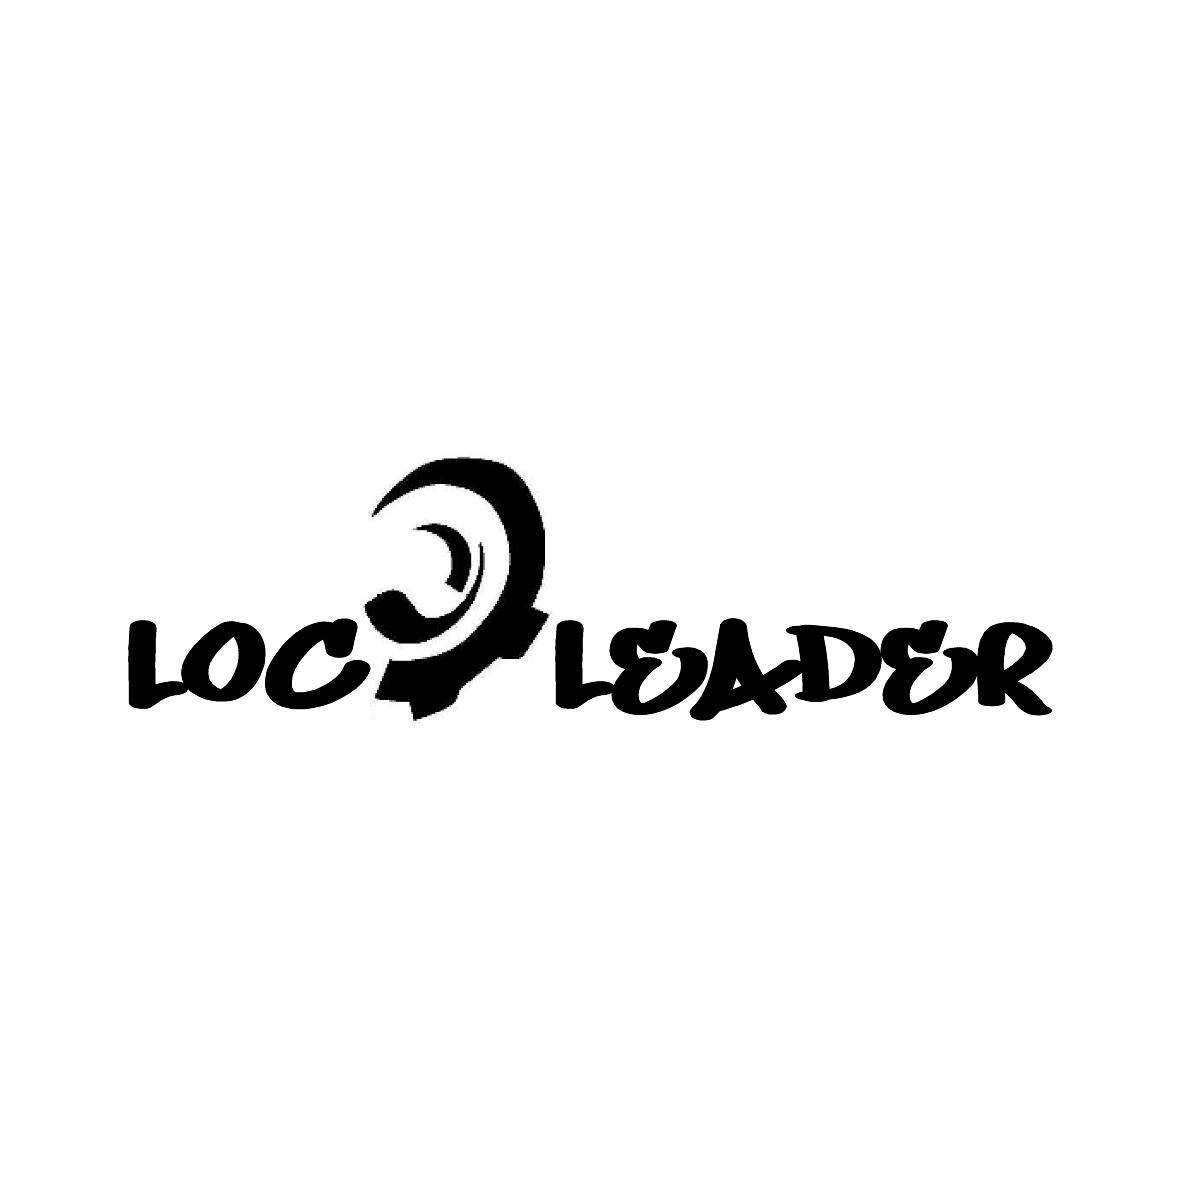 LOC LEADER